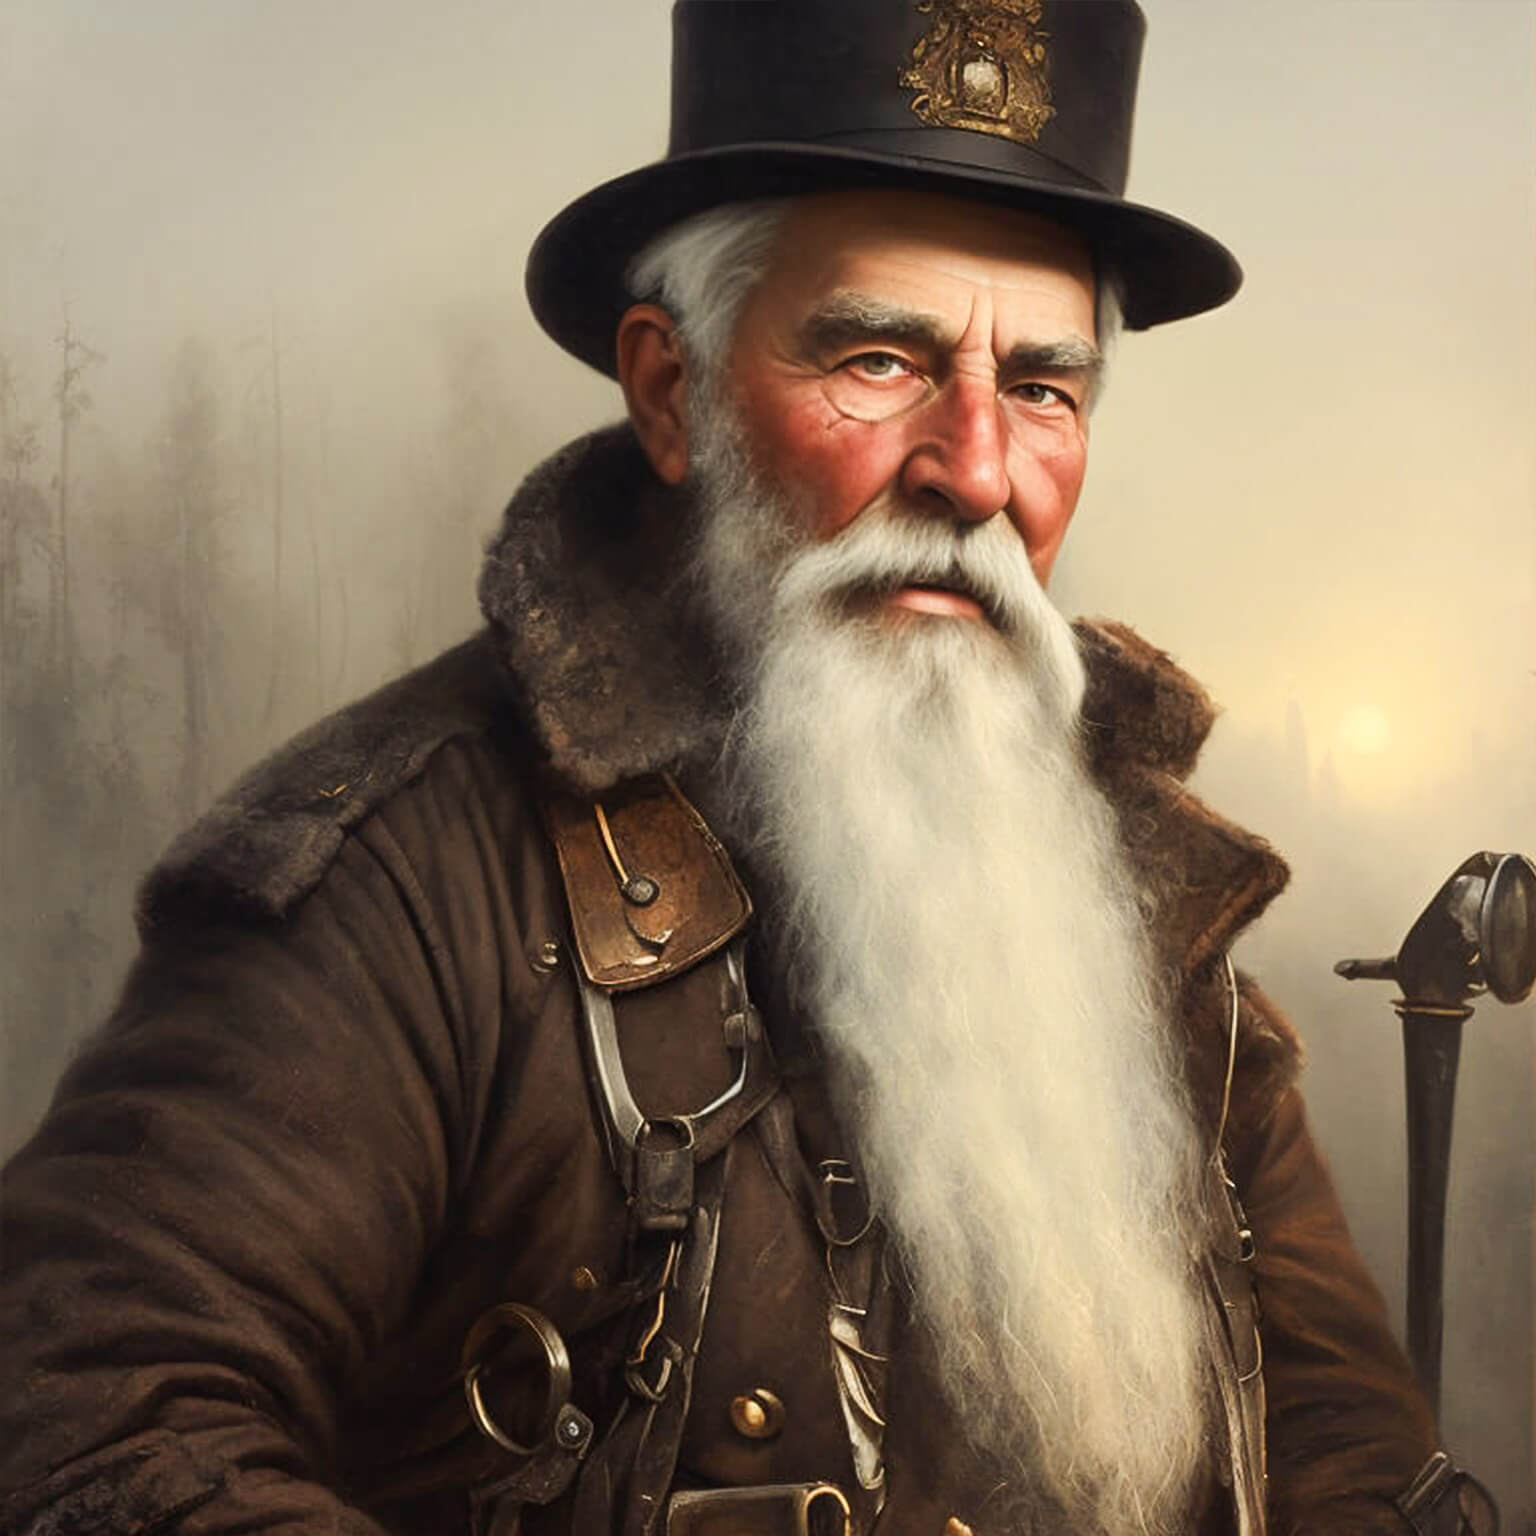 Ein KI Bild von einem älteren Kohle Arbeiter mit noblen Hut